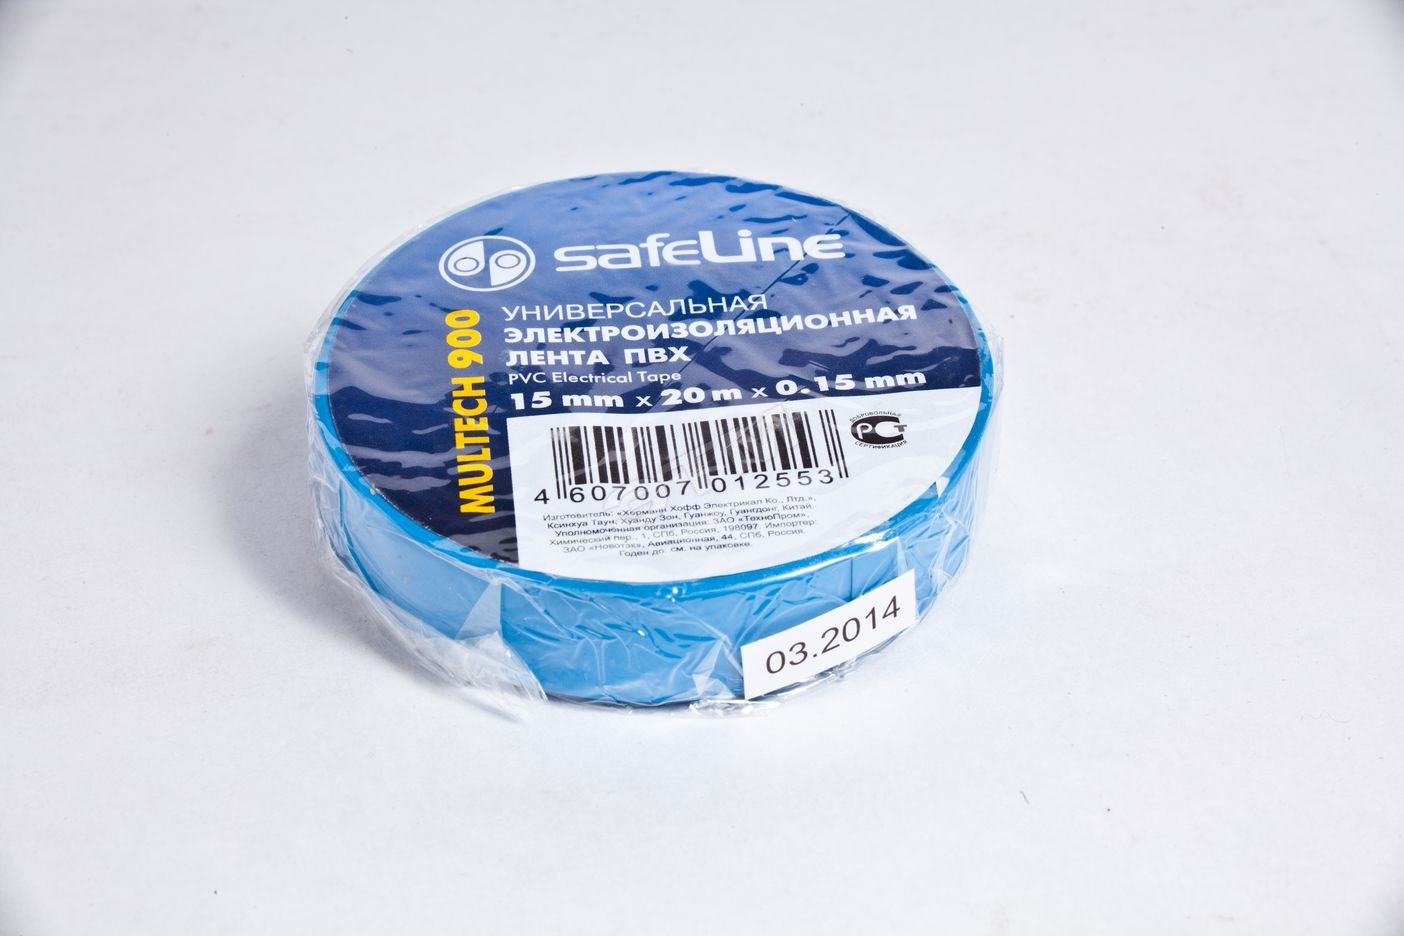  ПВХ синяя 19мм 25м Safeline SafeLine  цена